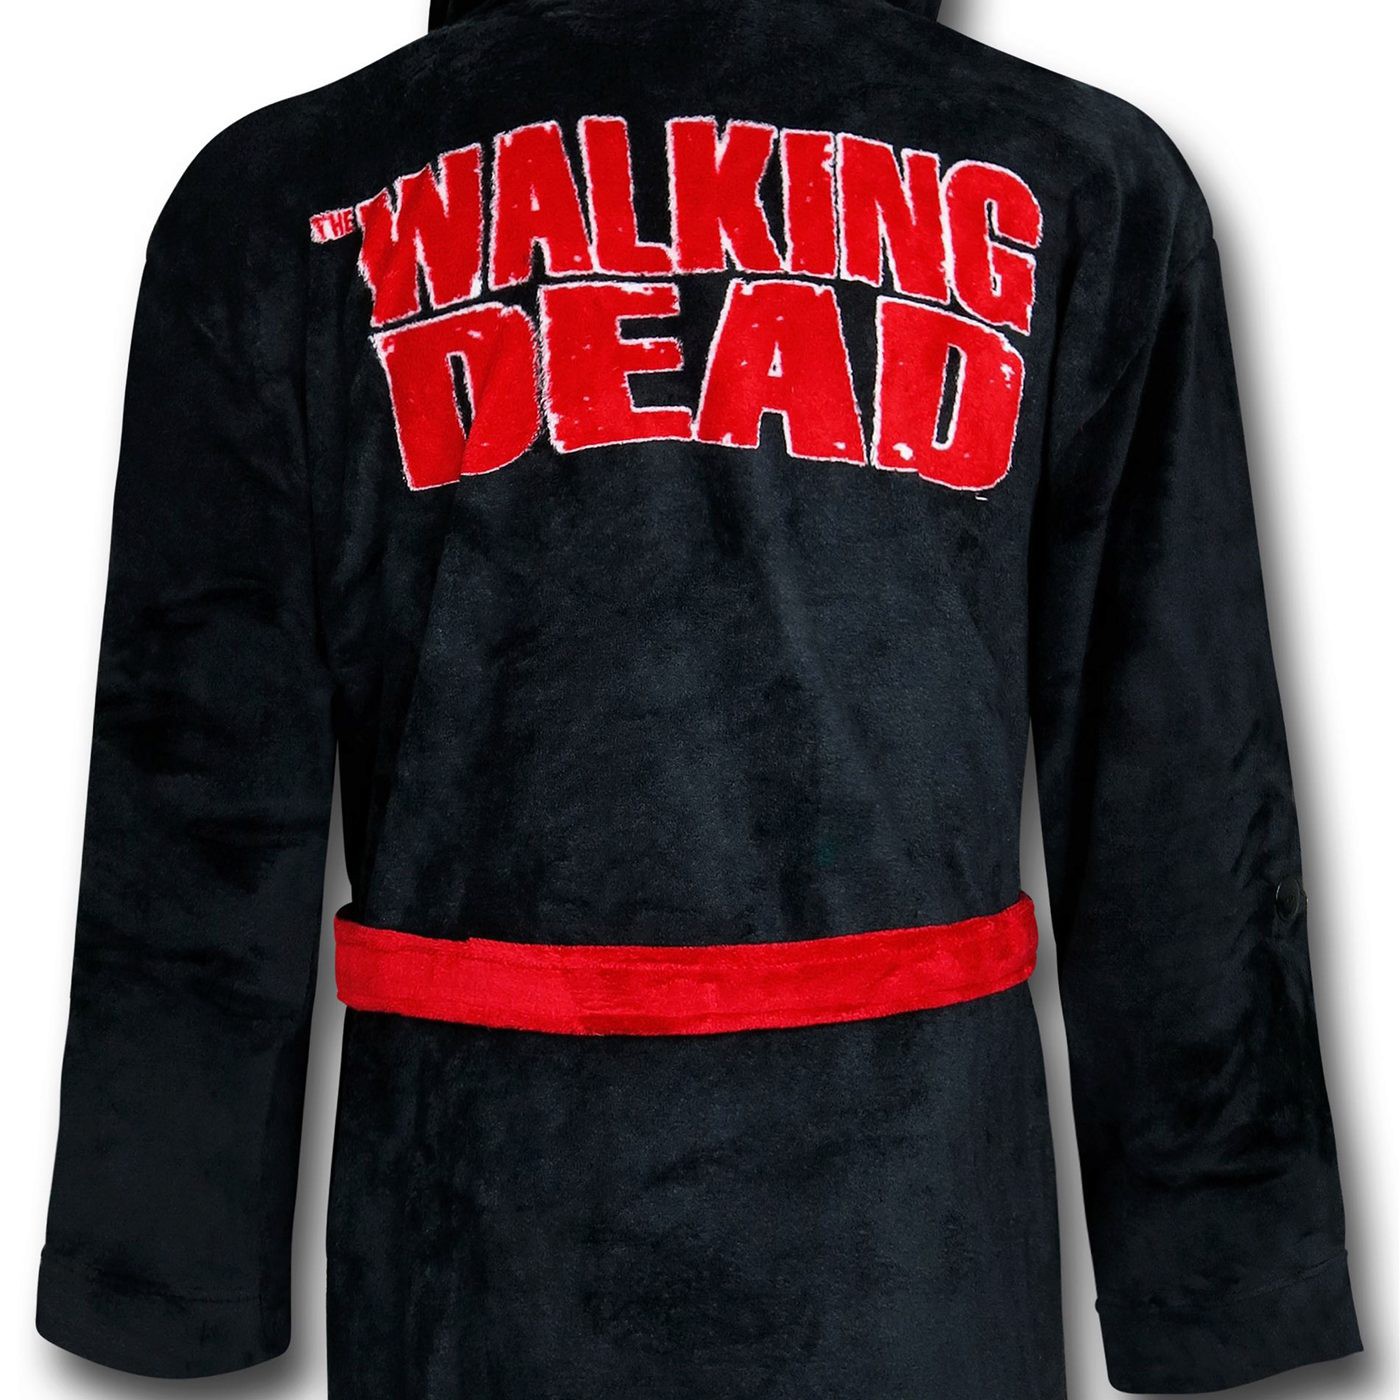 Walking Dead Robe